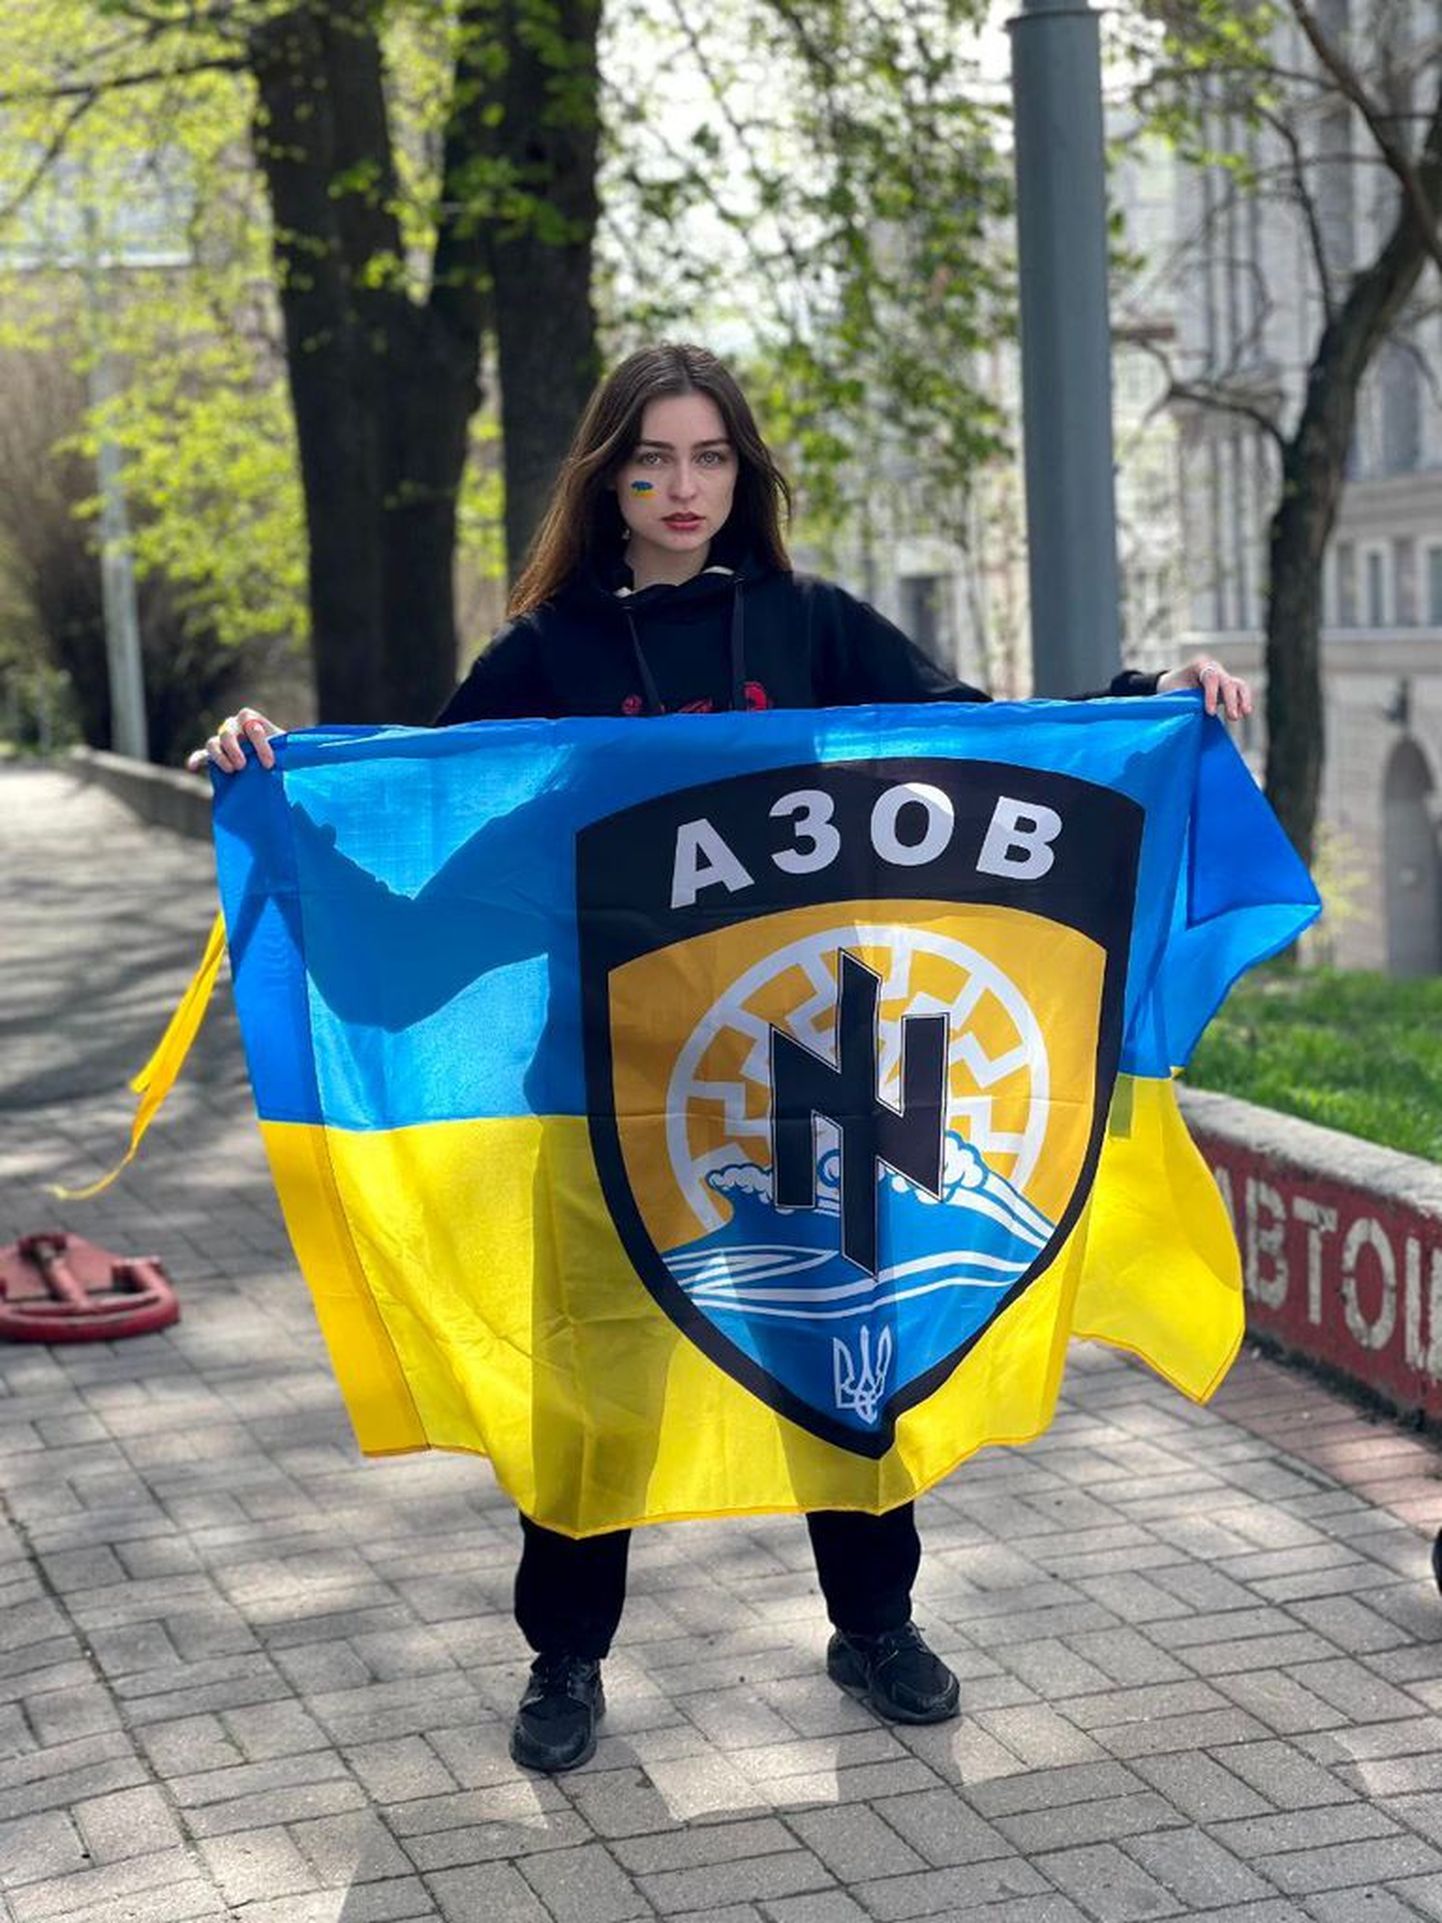 Azovi pataljoni võitleja, kes kannab kutsungit Frost, abikaasa Olhа vangistatud azovlaste toetuseks korraldatud meeleavaldusel.